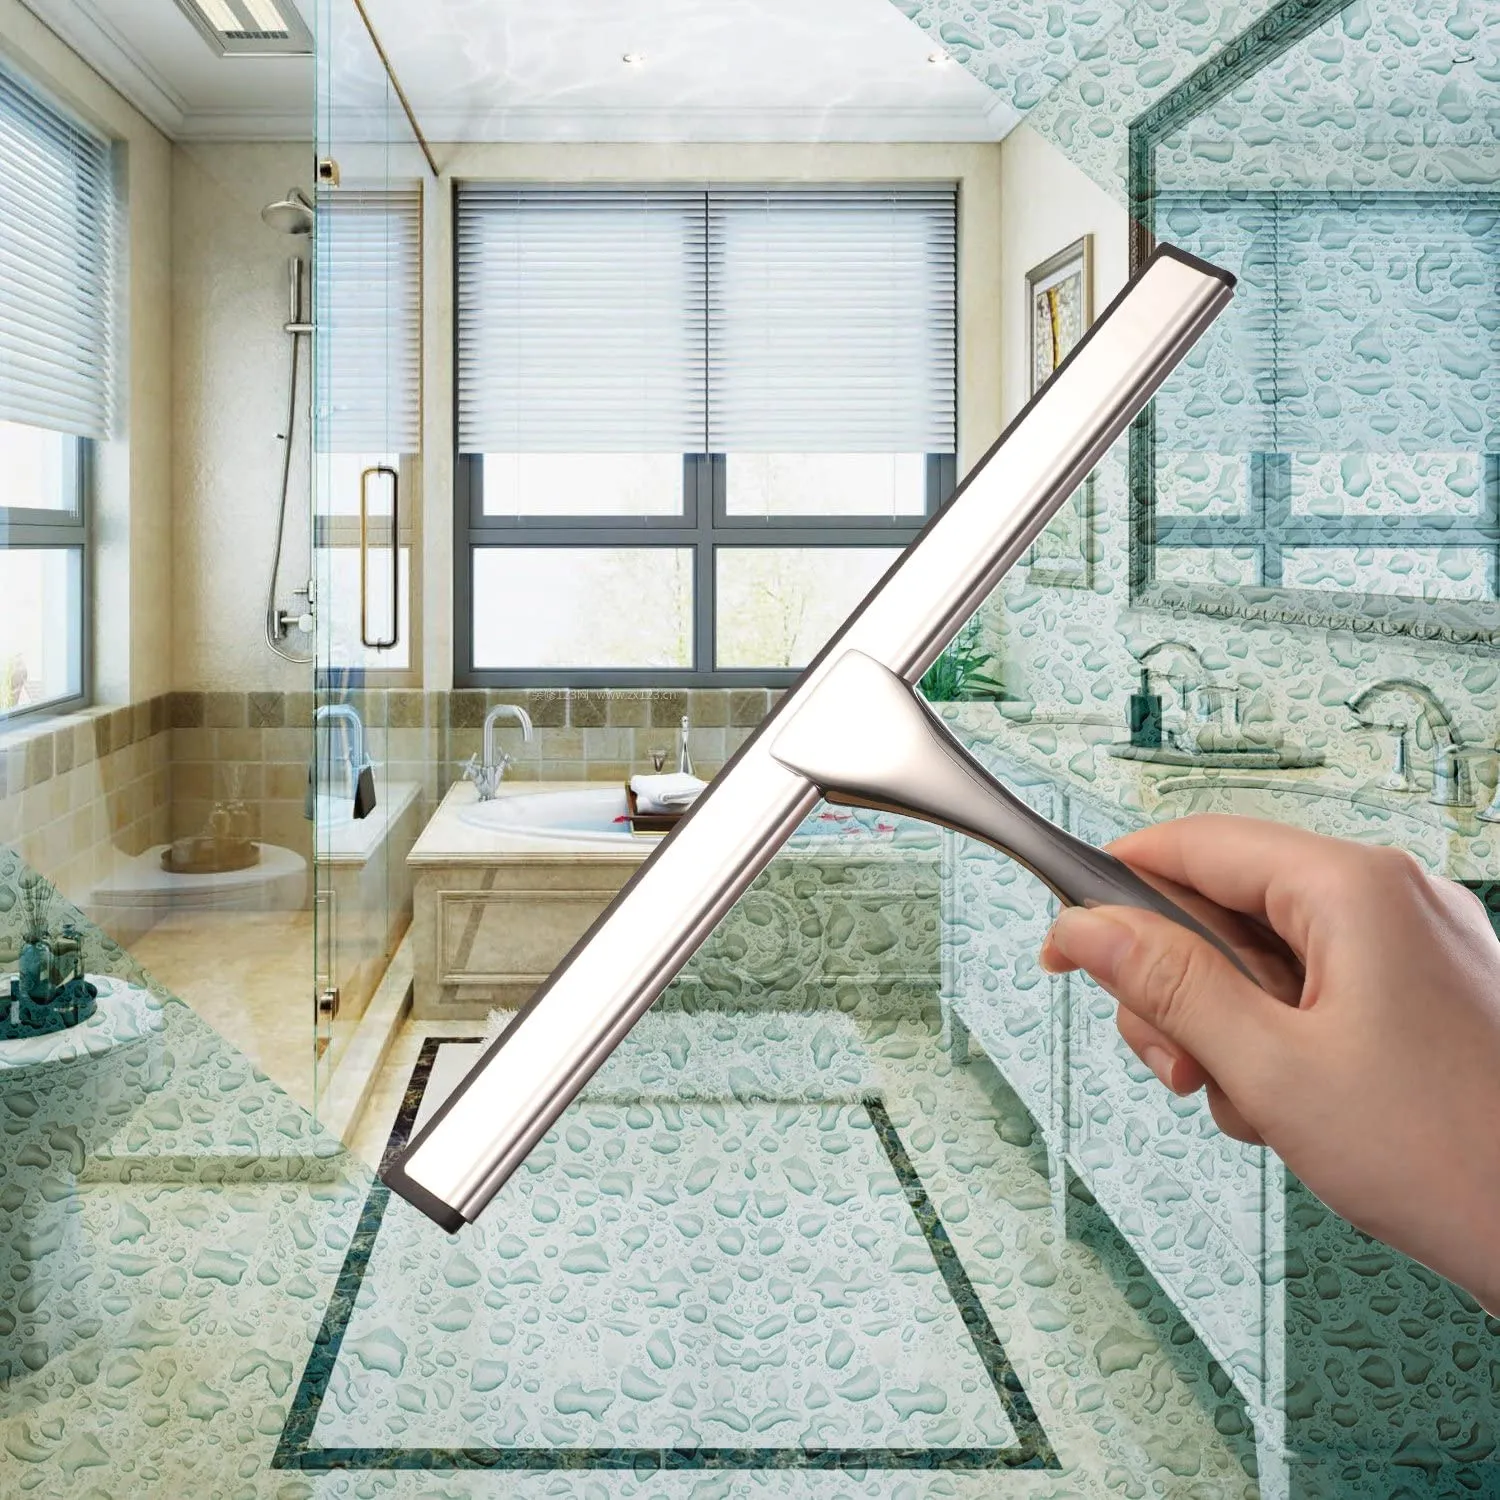 Allanhu all -purpose dusch Squeegee för duschdörrar badrumsfönster och bilglas - rostfritt stål 10 tum